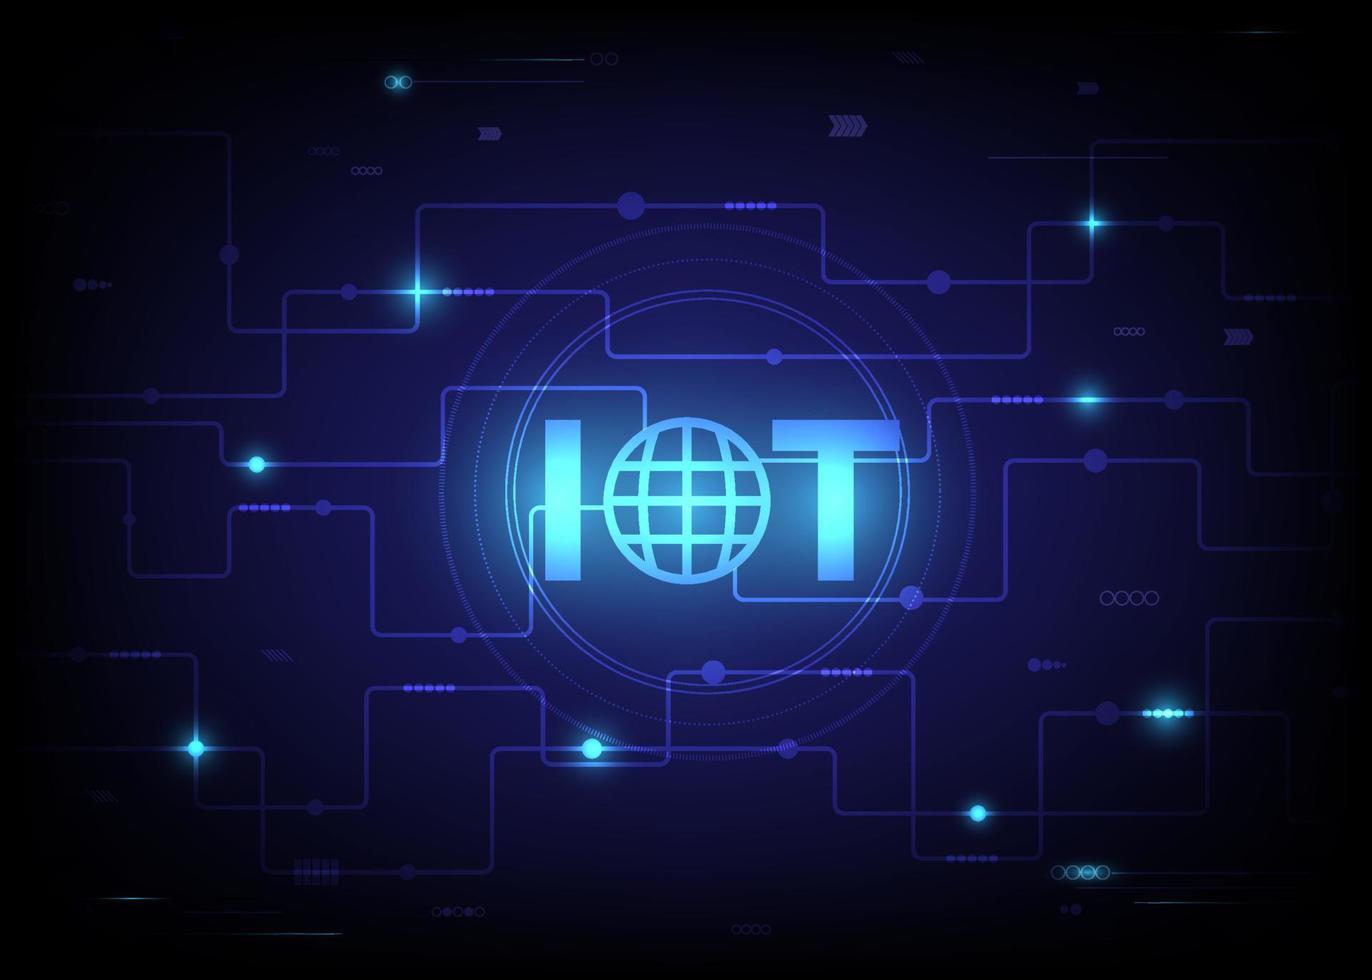 Konzept des Internets der Dinge und Konnektivitätskonzepte in einem Netzwerk. Spinnennetz von Netzwerkverbindungen mit auf einer futuristischen blauen background.digital Platine. vektor